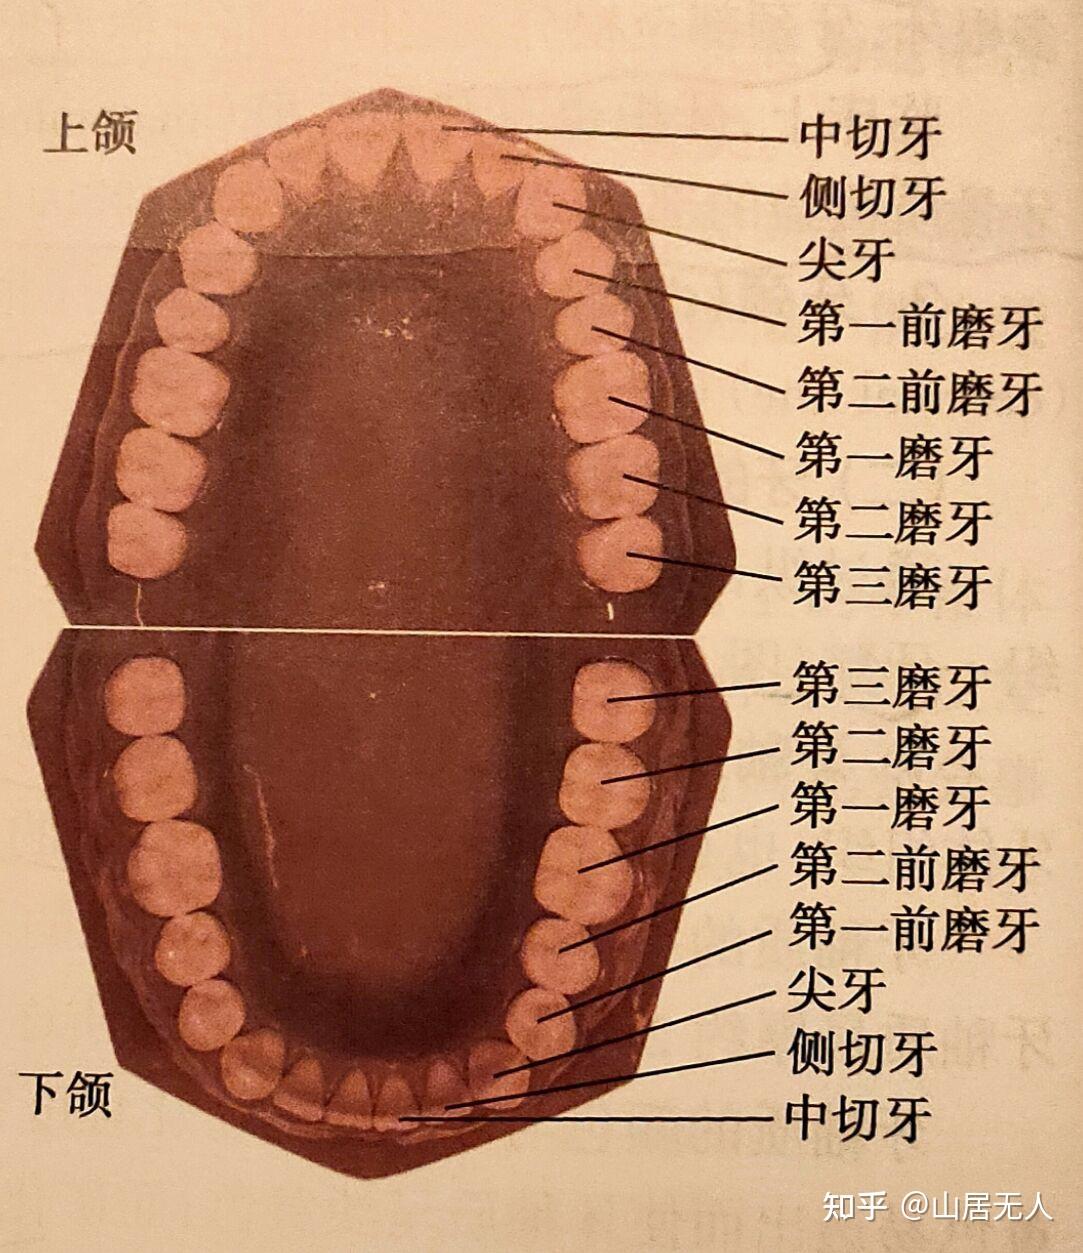 牙分为前牙与后牙,其中前牙包括切牙和尖牙,后牙包括前磨牙和磨牙.1.